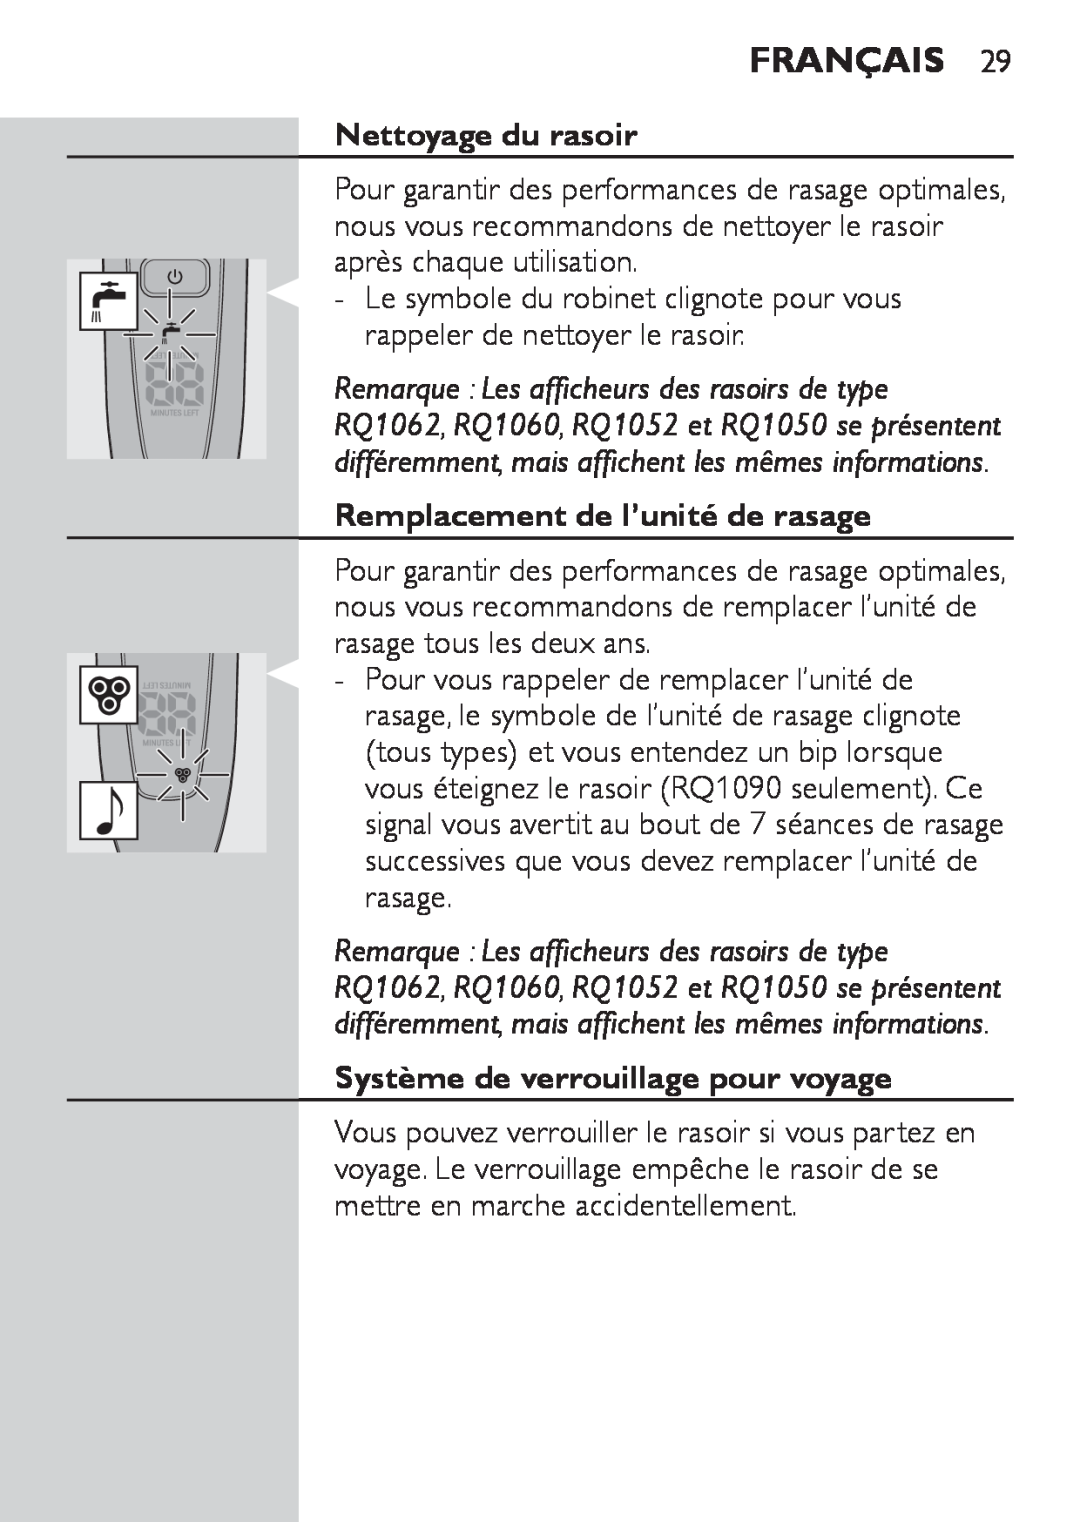 Philips RQ1060 manual Nettoyage du rasoir, Remplacement de l’unité de rasage, Système de verrouillage pour voyage, Français 